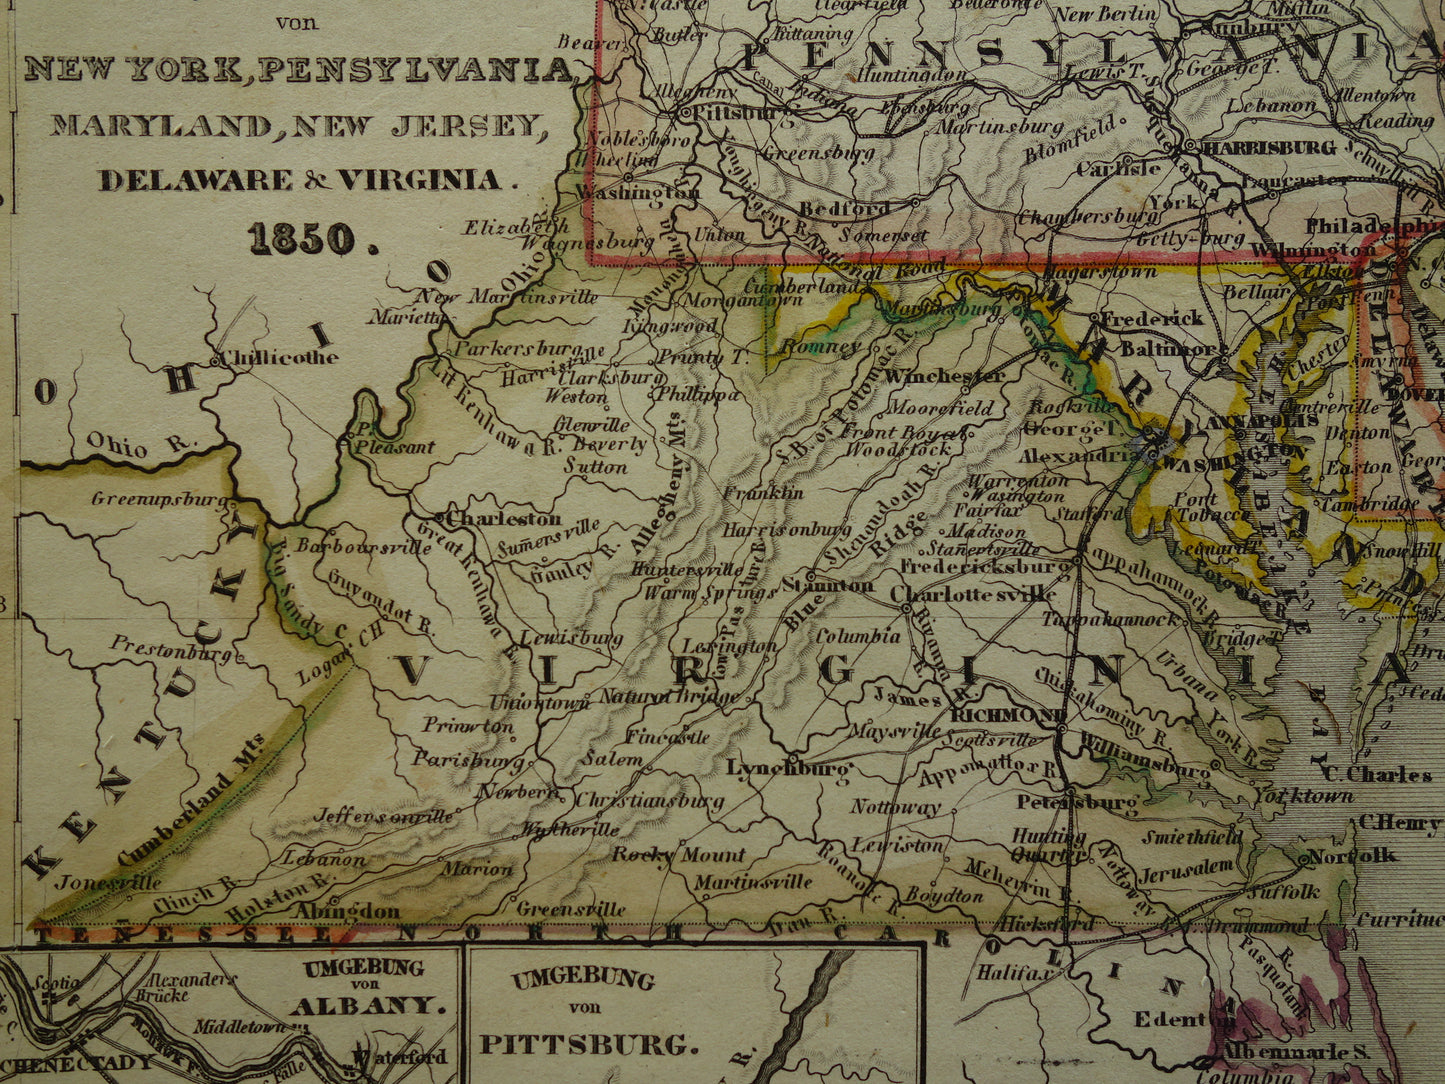 Oude kaart van de noordoostkust van de VS uit 1850 met de staten New York New Jersey Pennsylvania - antieke landkaart met jaartal